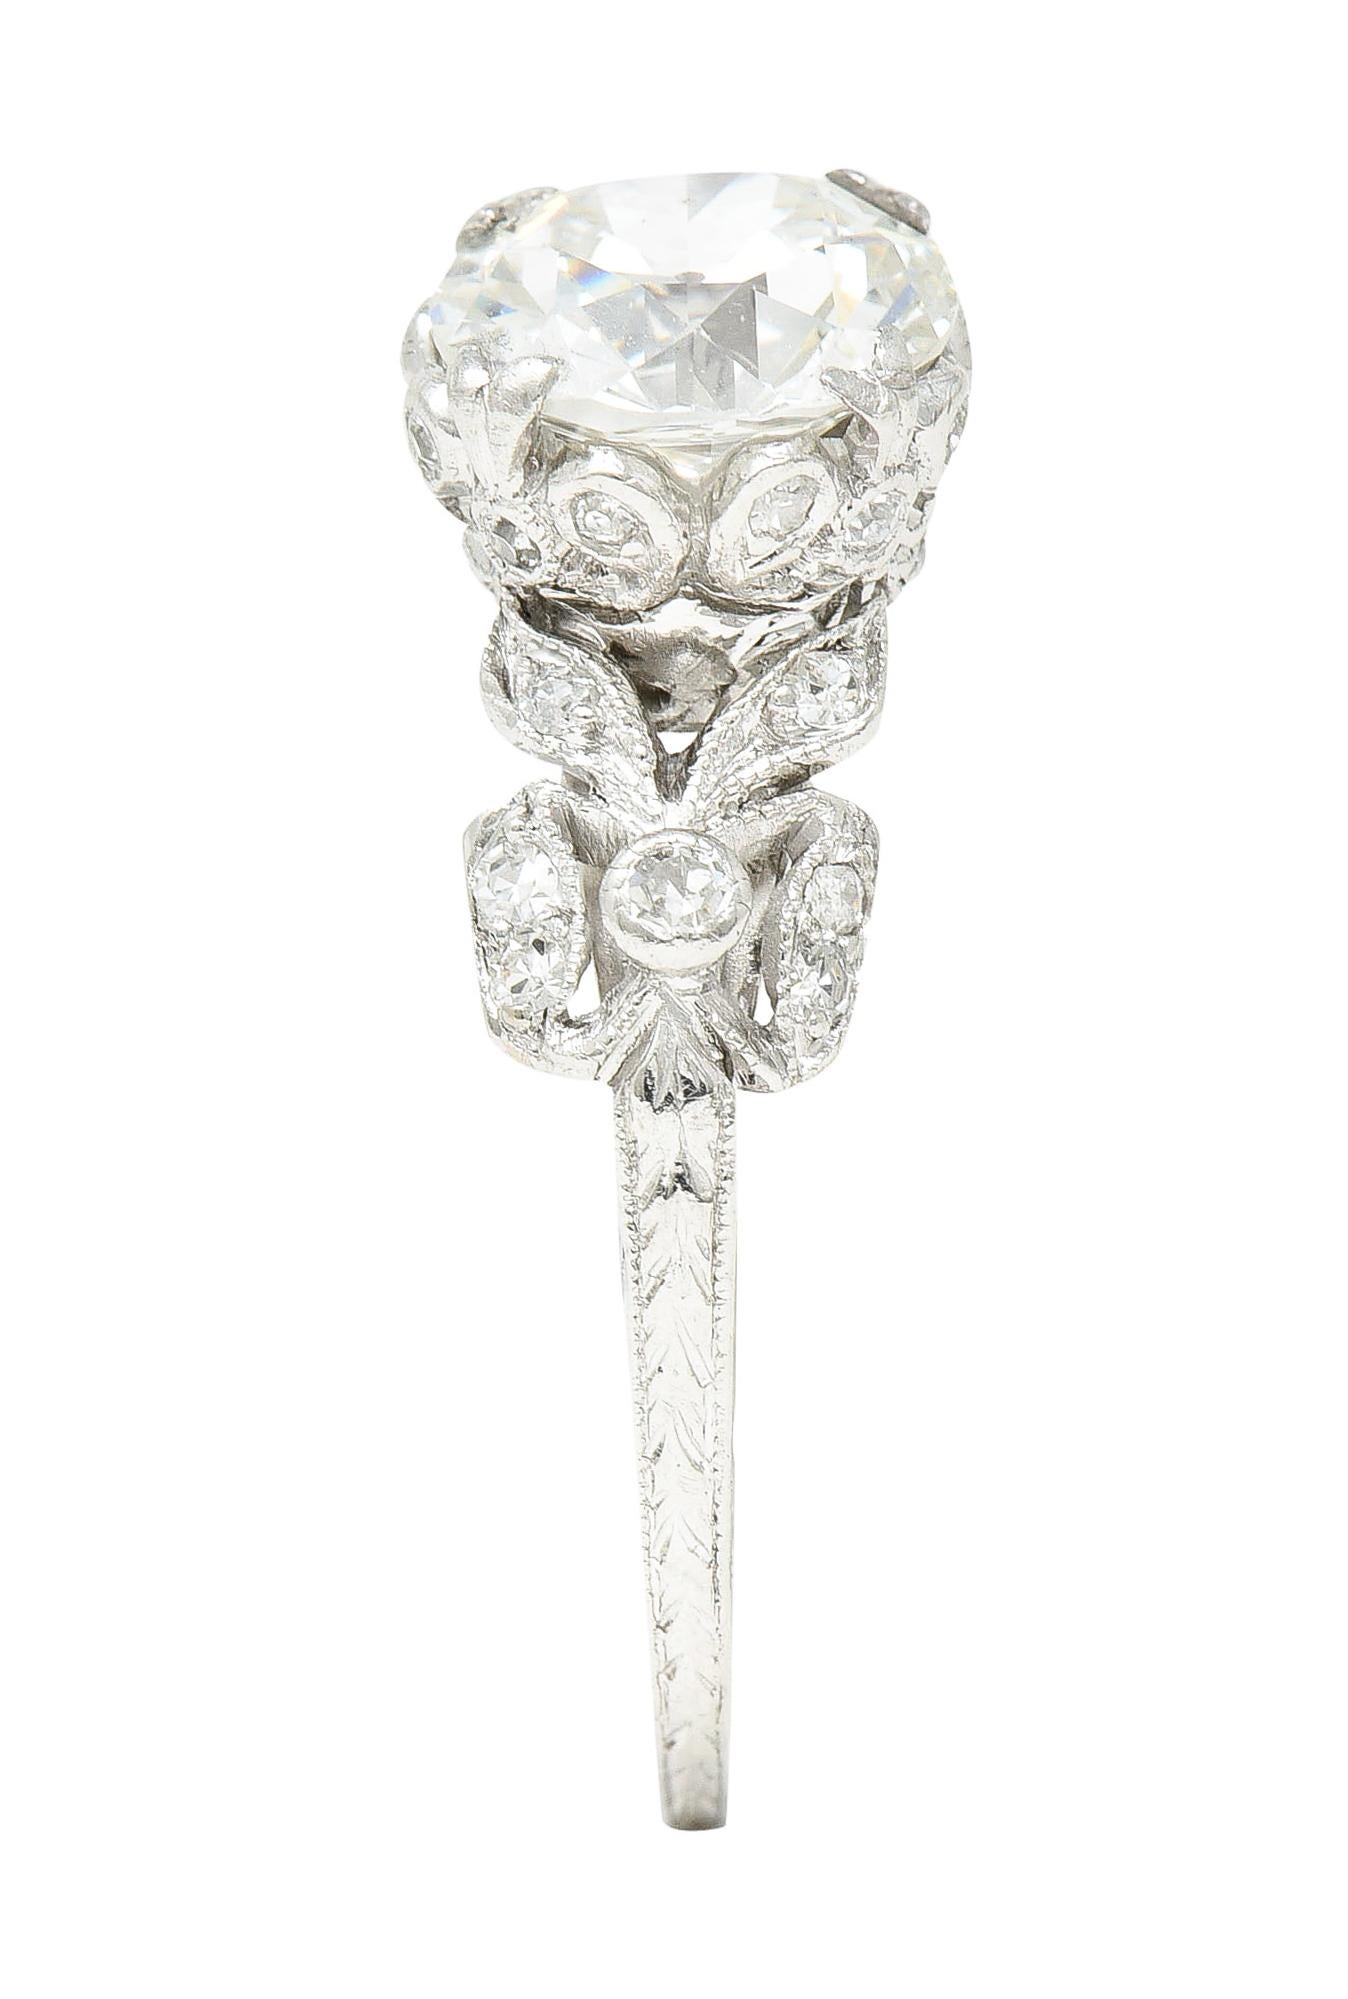 Edwardian 2.07 Carat European Cut Diamond Platinum Floral Engagement Ring GIA 5